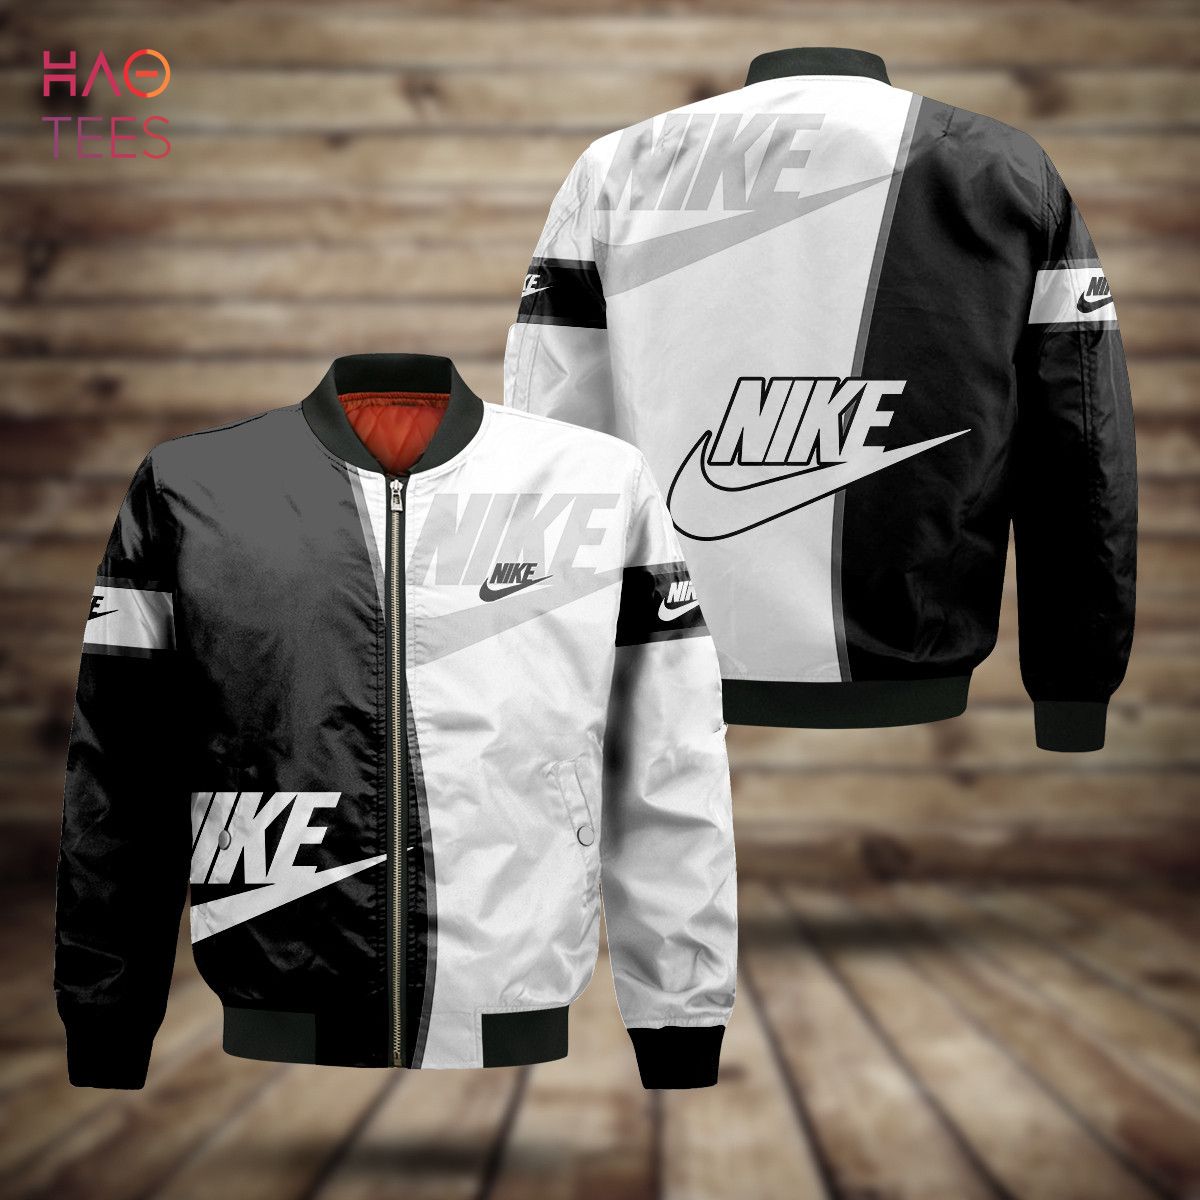 HOT Nike Luxury Brand White Mix Black Bomber Jacket Limited Edition